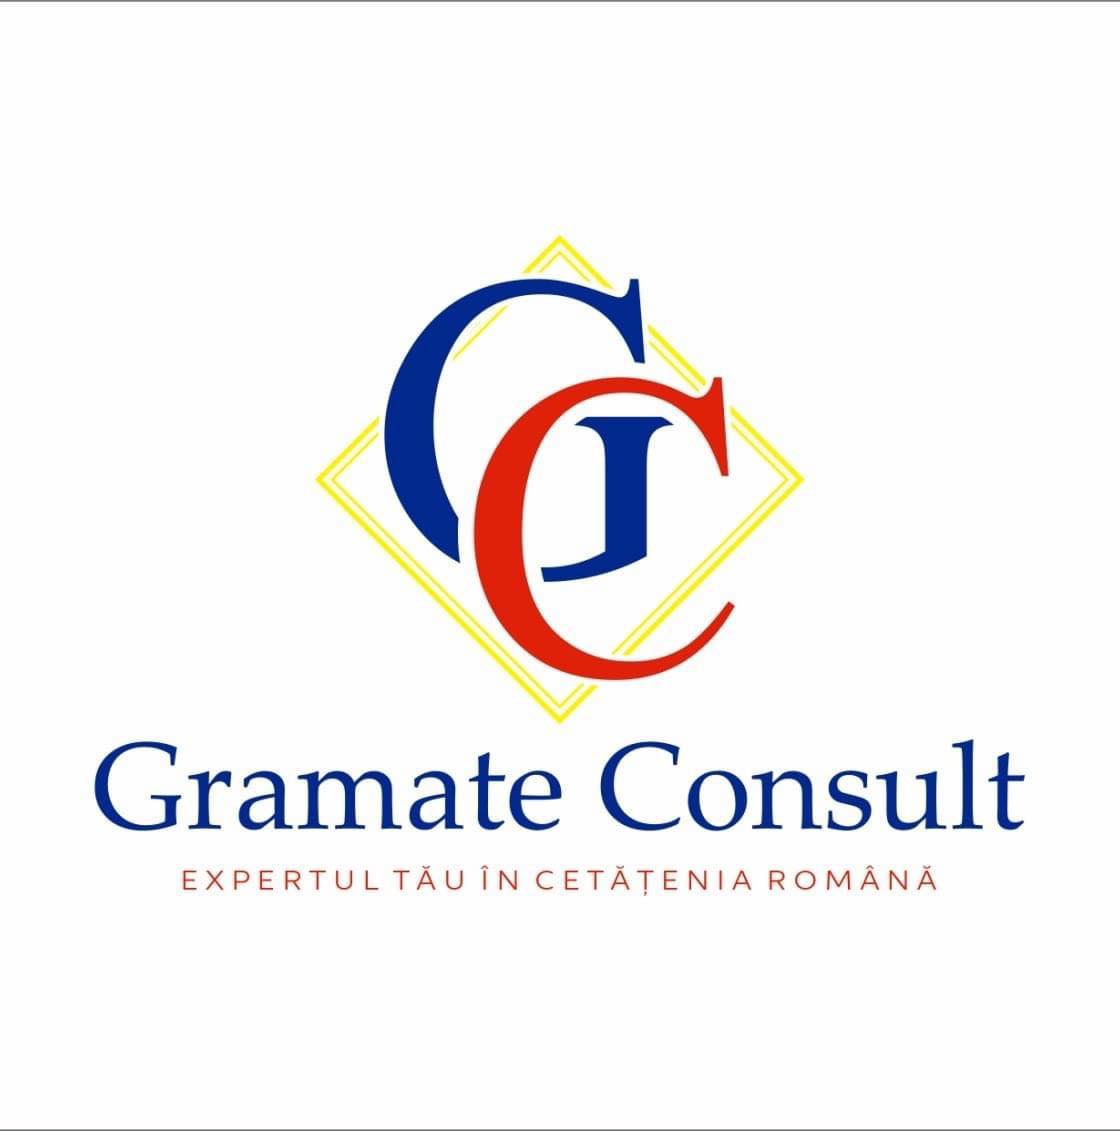 Gramate Consult